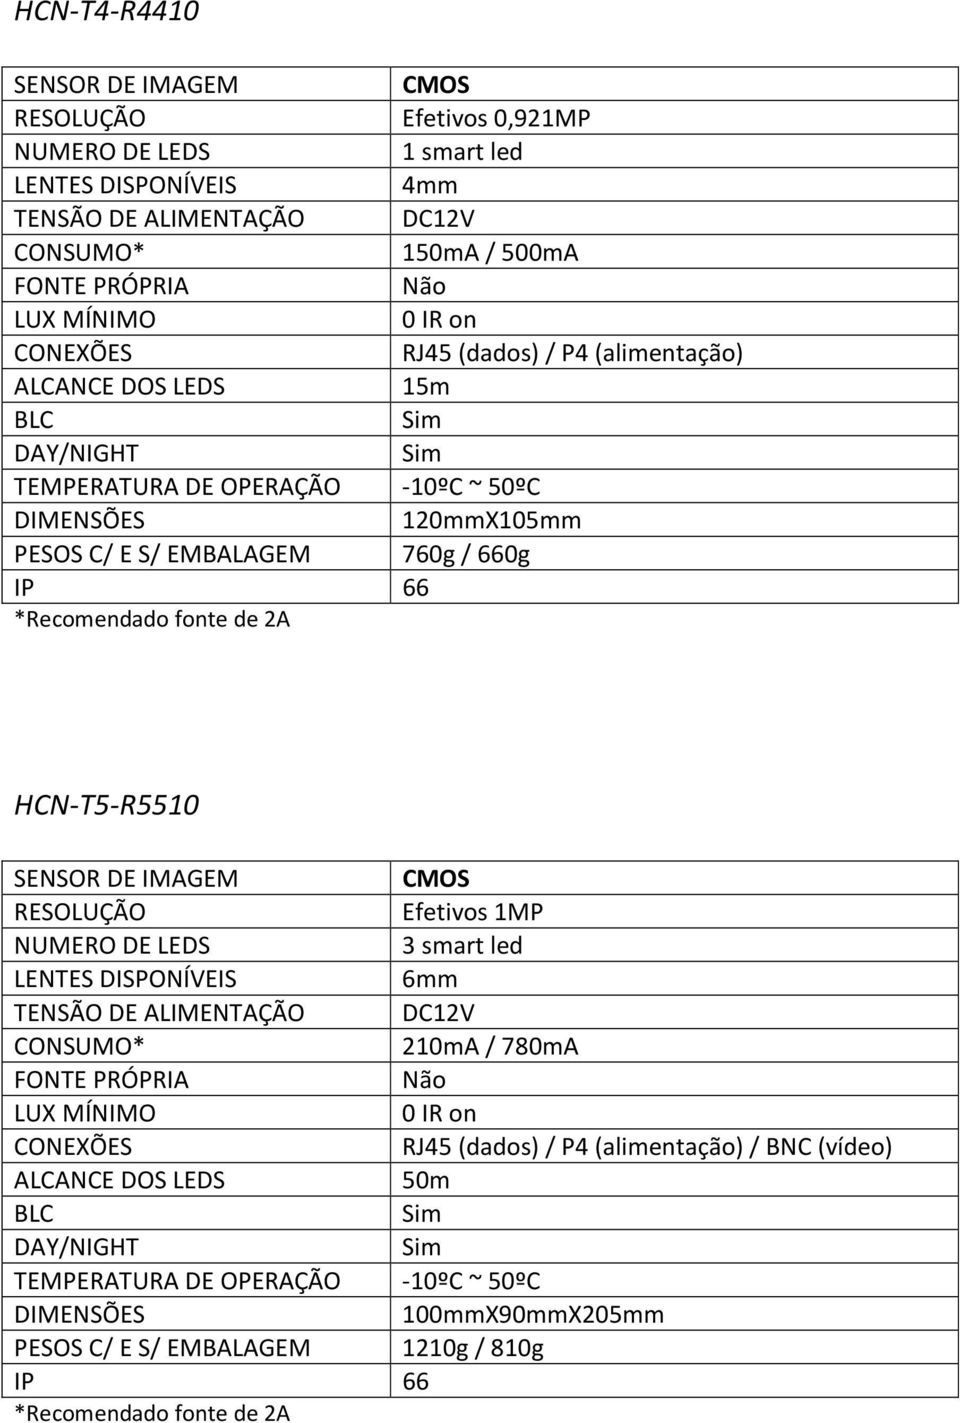 HCN-T5-R5510 RESOLUÇÃO Efetivos 1MP 3 smart led LENTES DISPONÍVEIS 6mm 210mA /